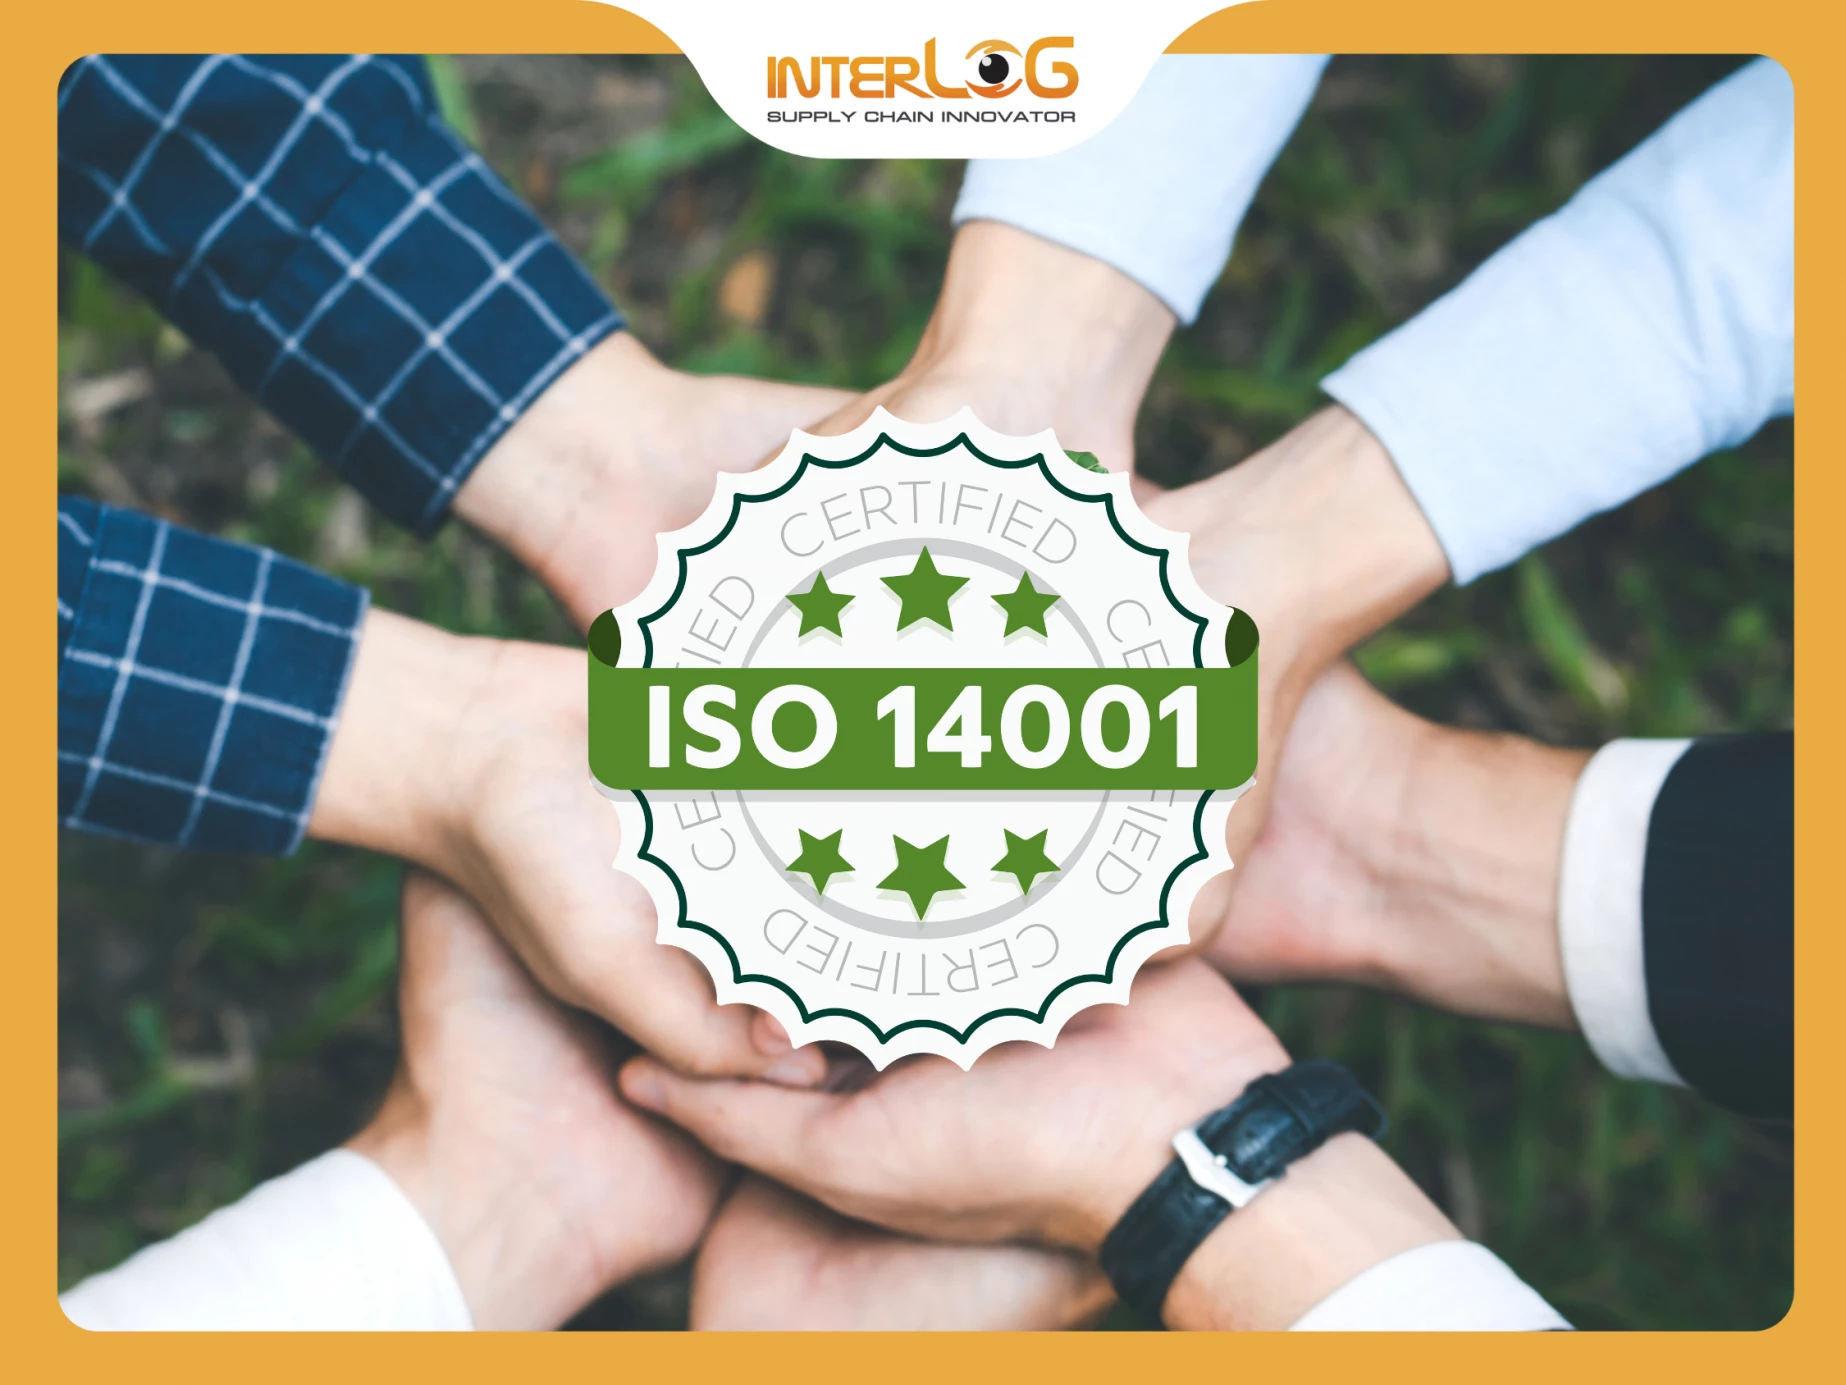 [Chuyển đổi xanh] - InterLOG đạt chứng nhận ISO 14001:2015 về Quản lý môi trường